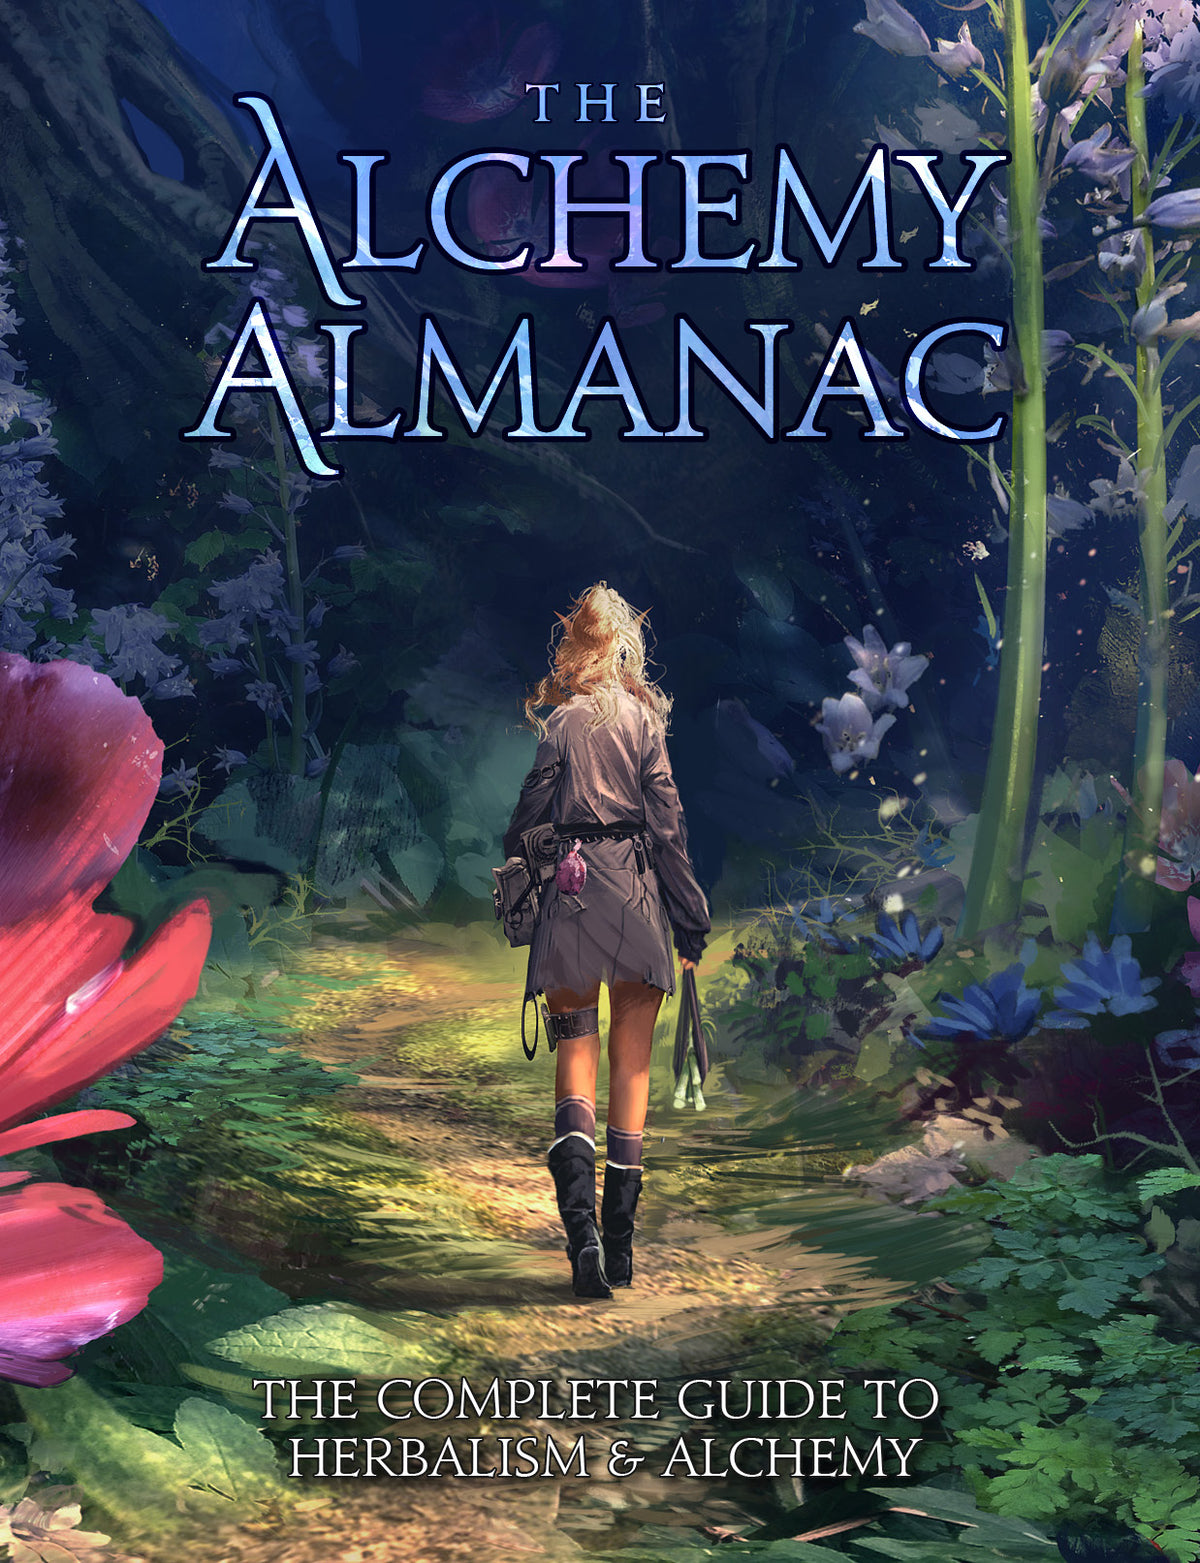 The Alchemy Almanac